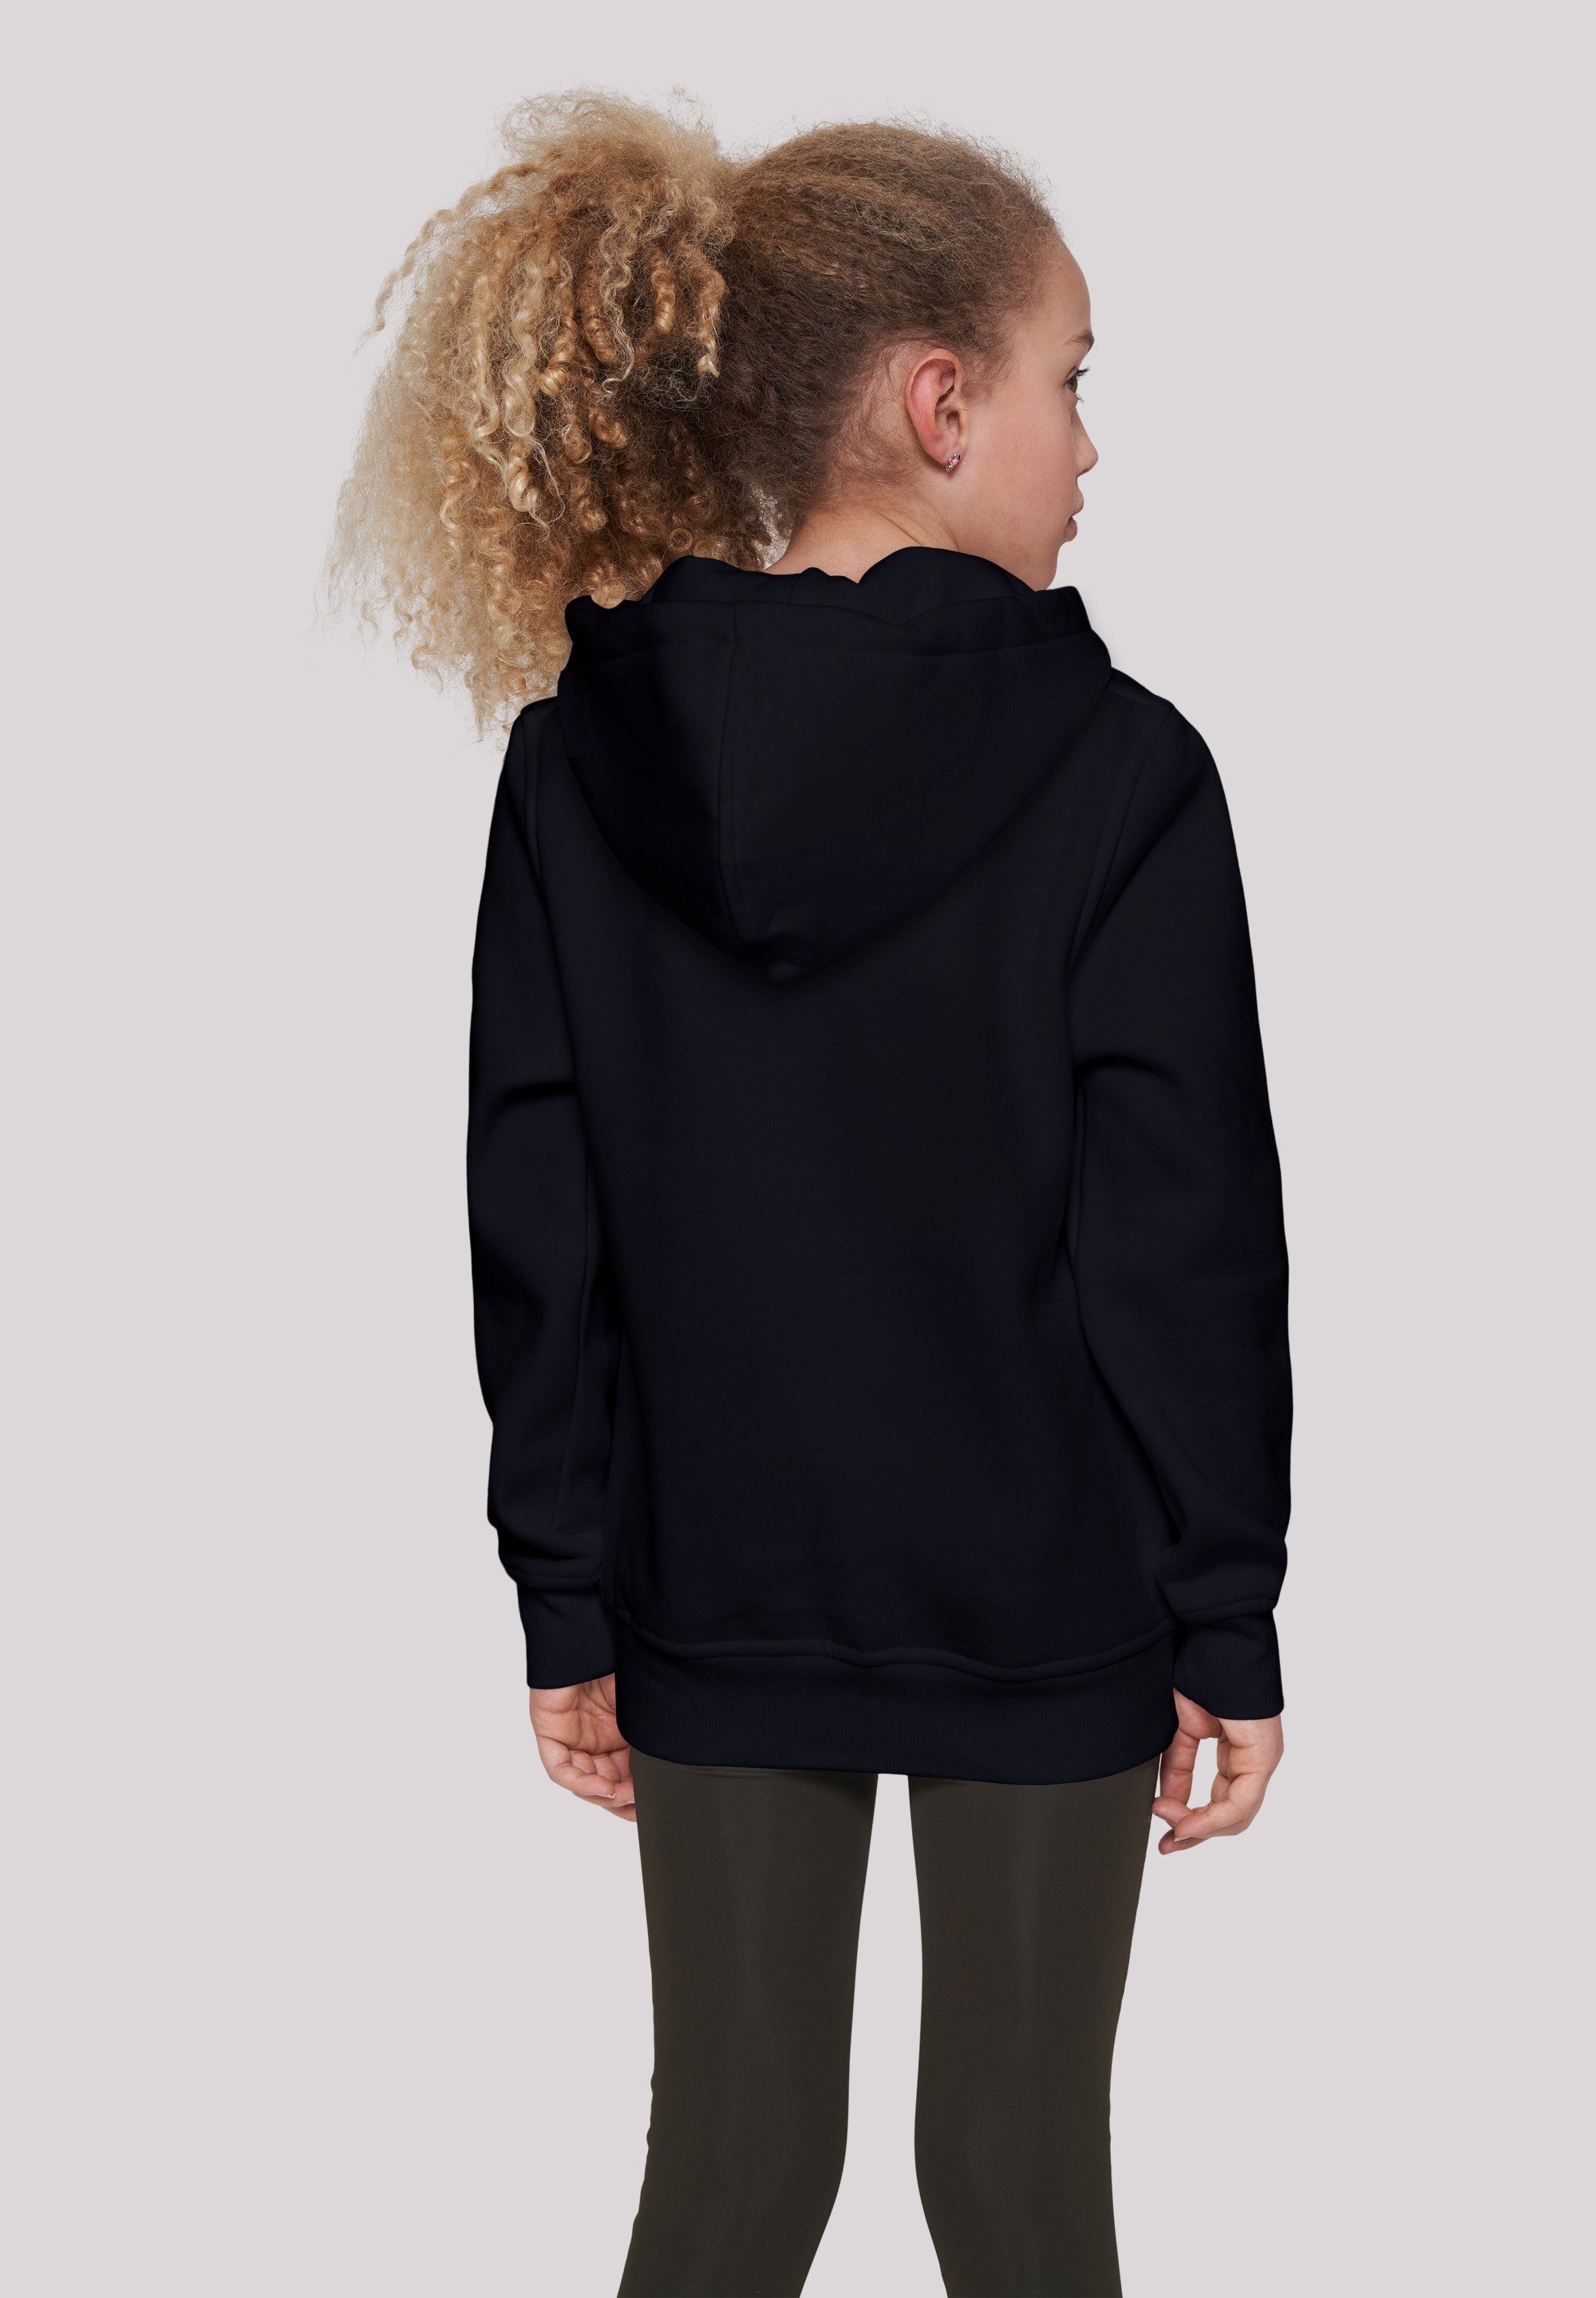 Kinder,Premium Sweatshirt Unisex Be schwarz Be Curious Disney Brave Merch,Jungen,Mädchen,Bedruckt F4NT4STIC